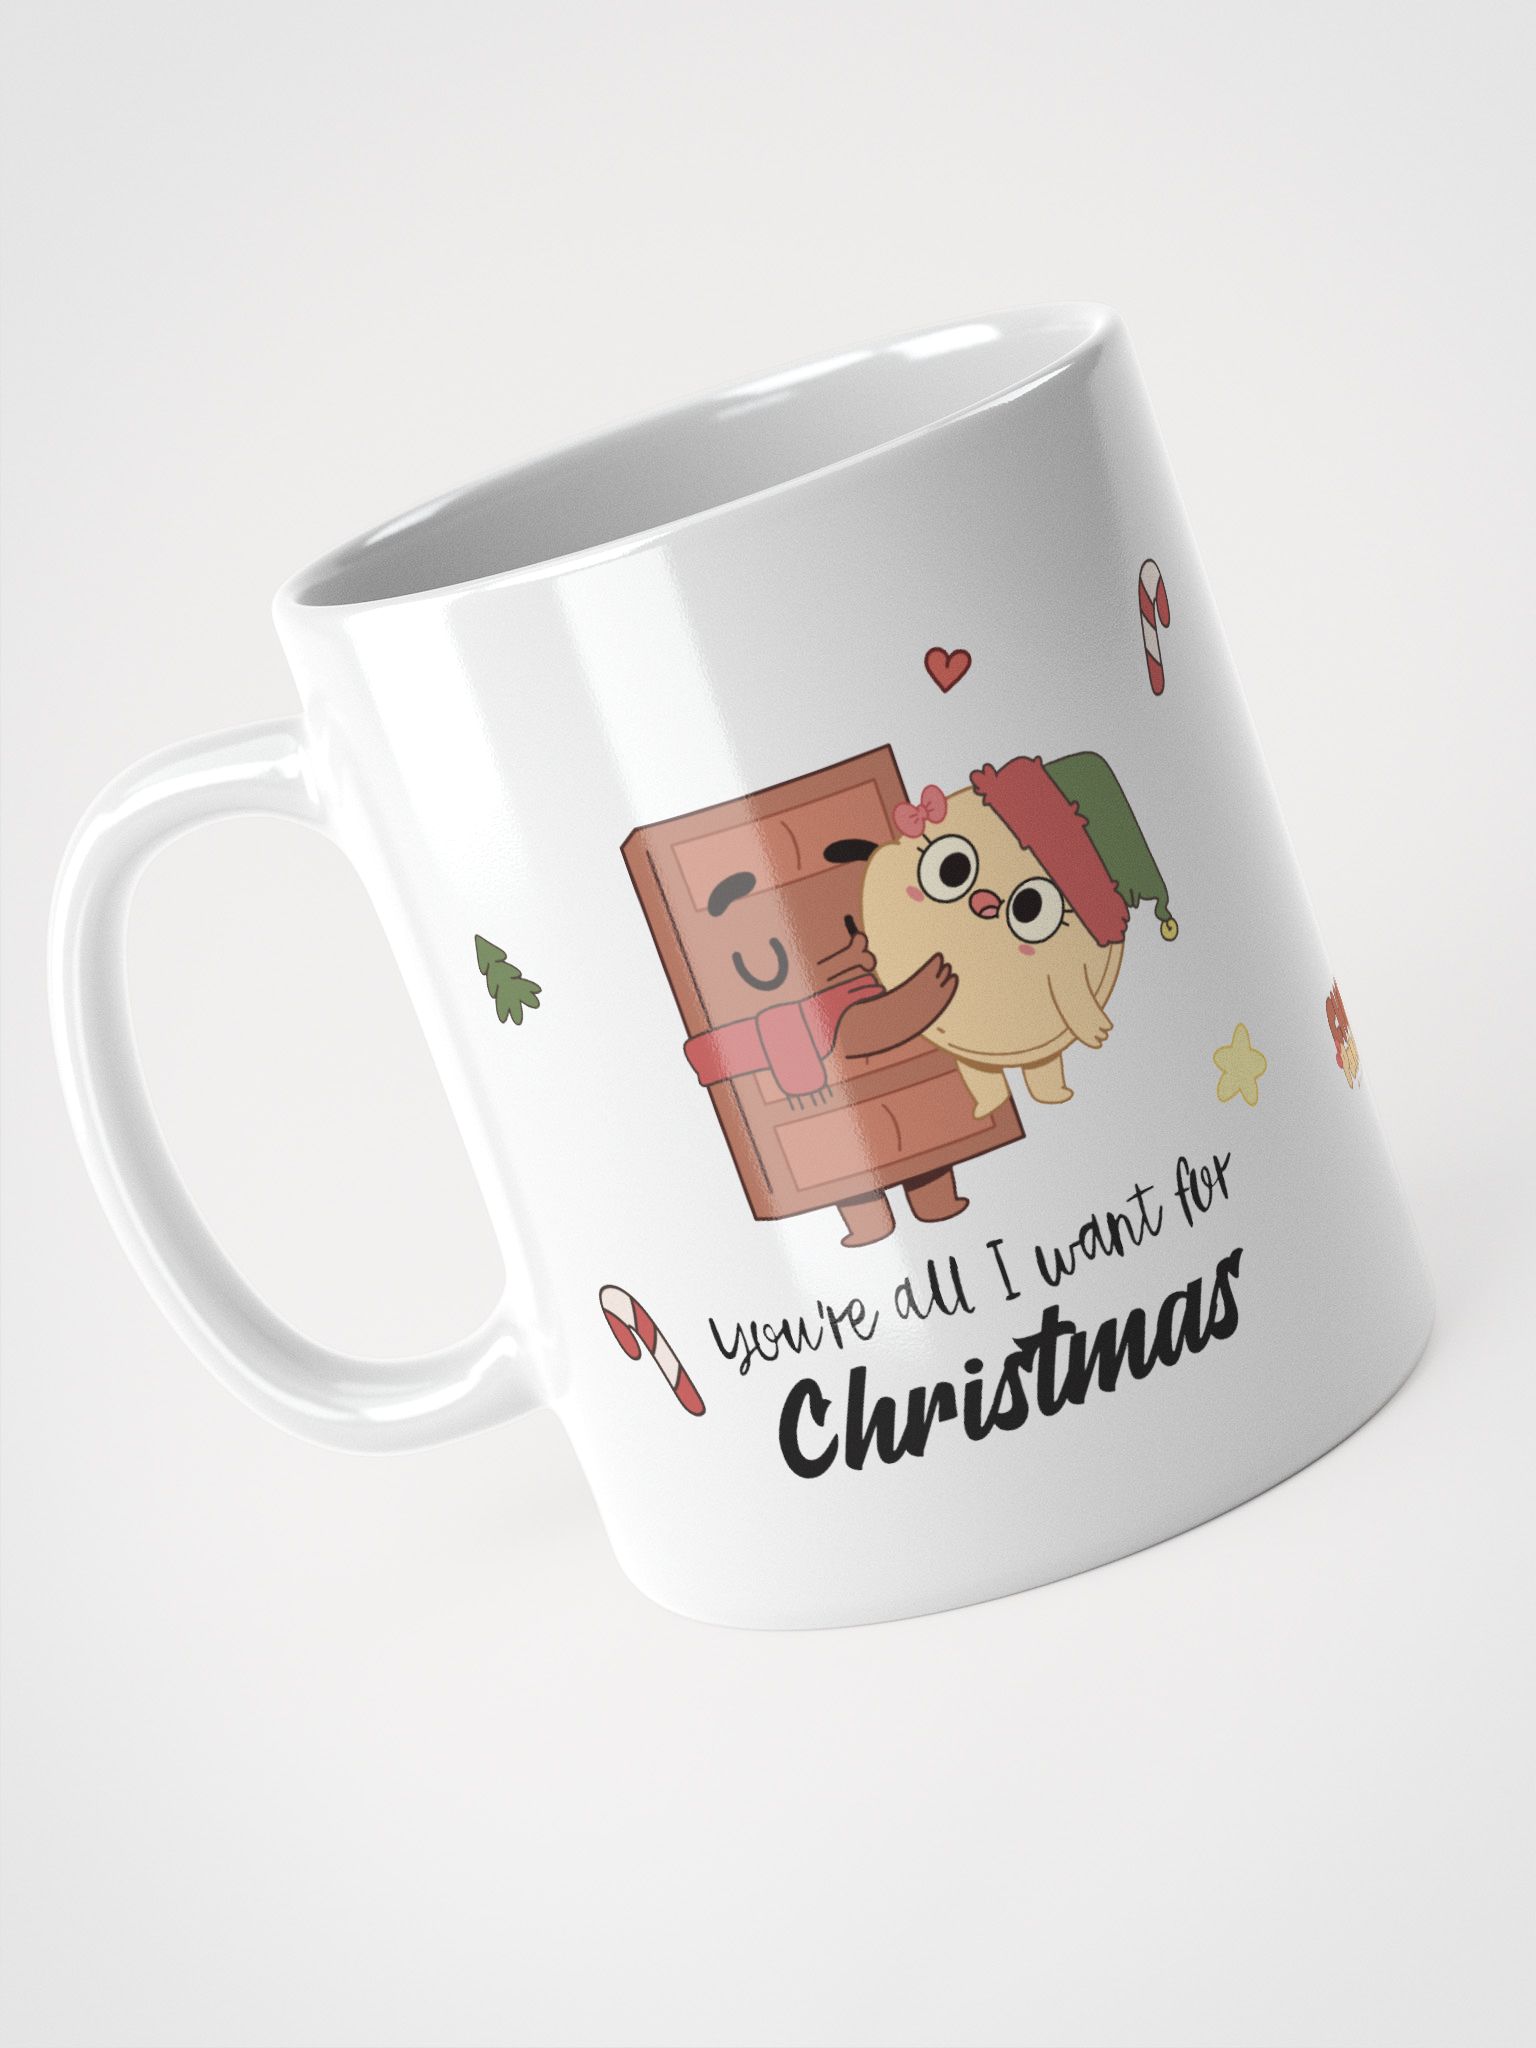 All I Want (Christmas Mug)